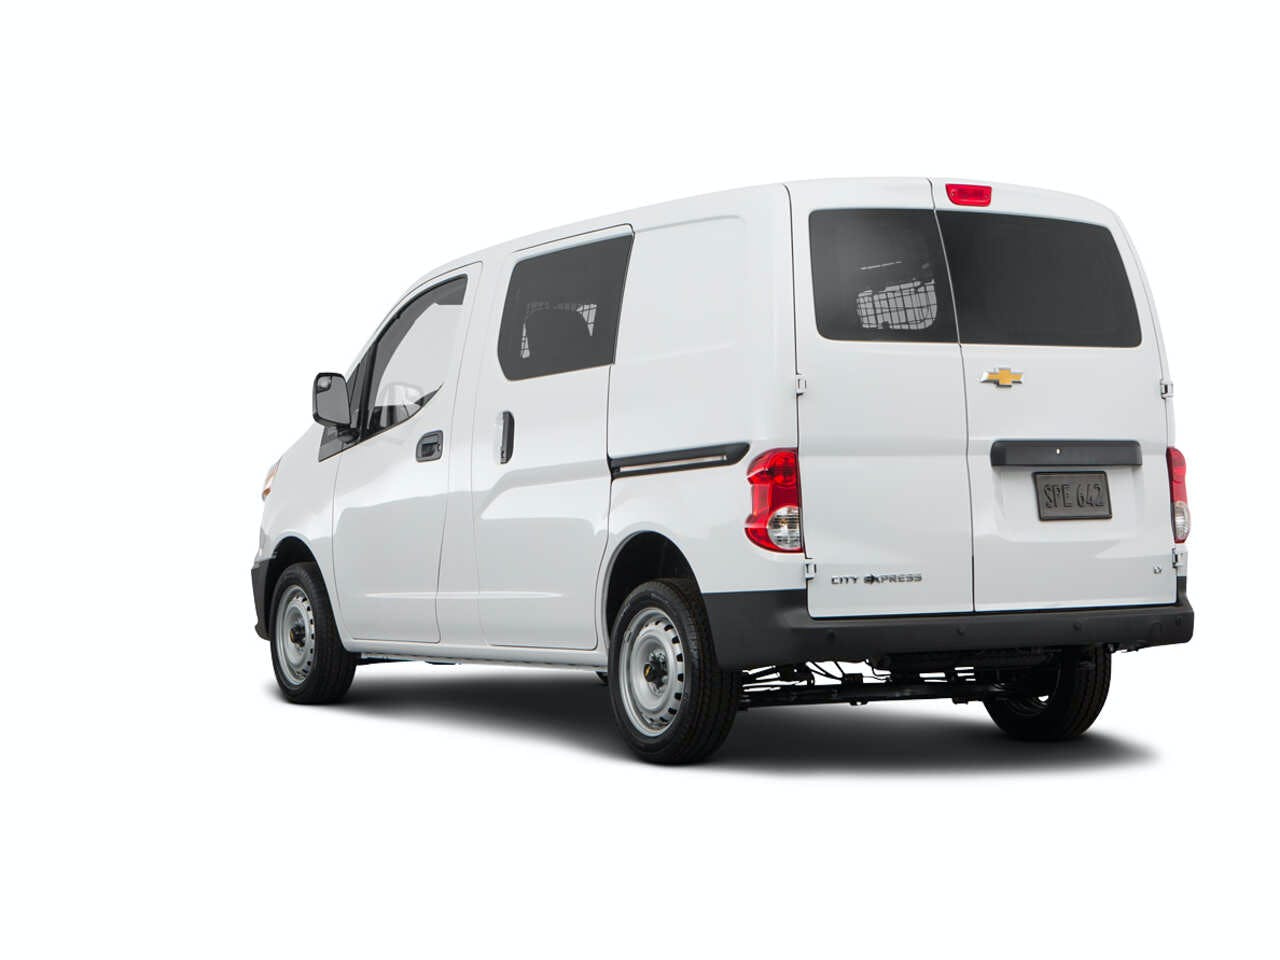 2018 Chevrolet City Express Cargo Van Review | Pricing, Trims & Photos -  TrueCar